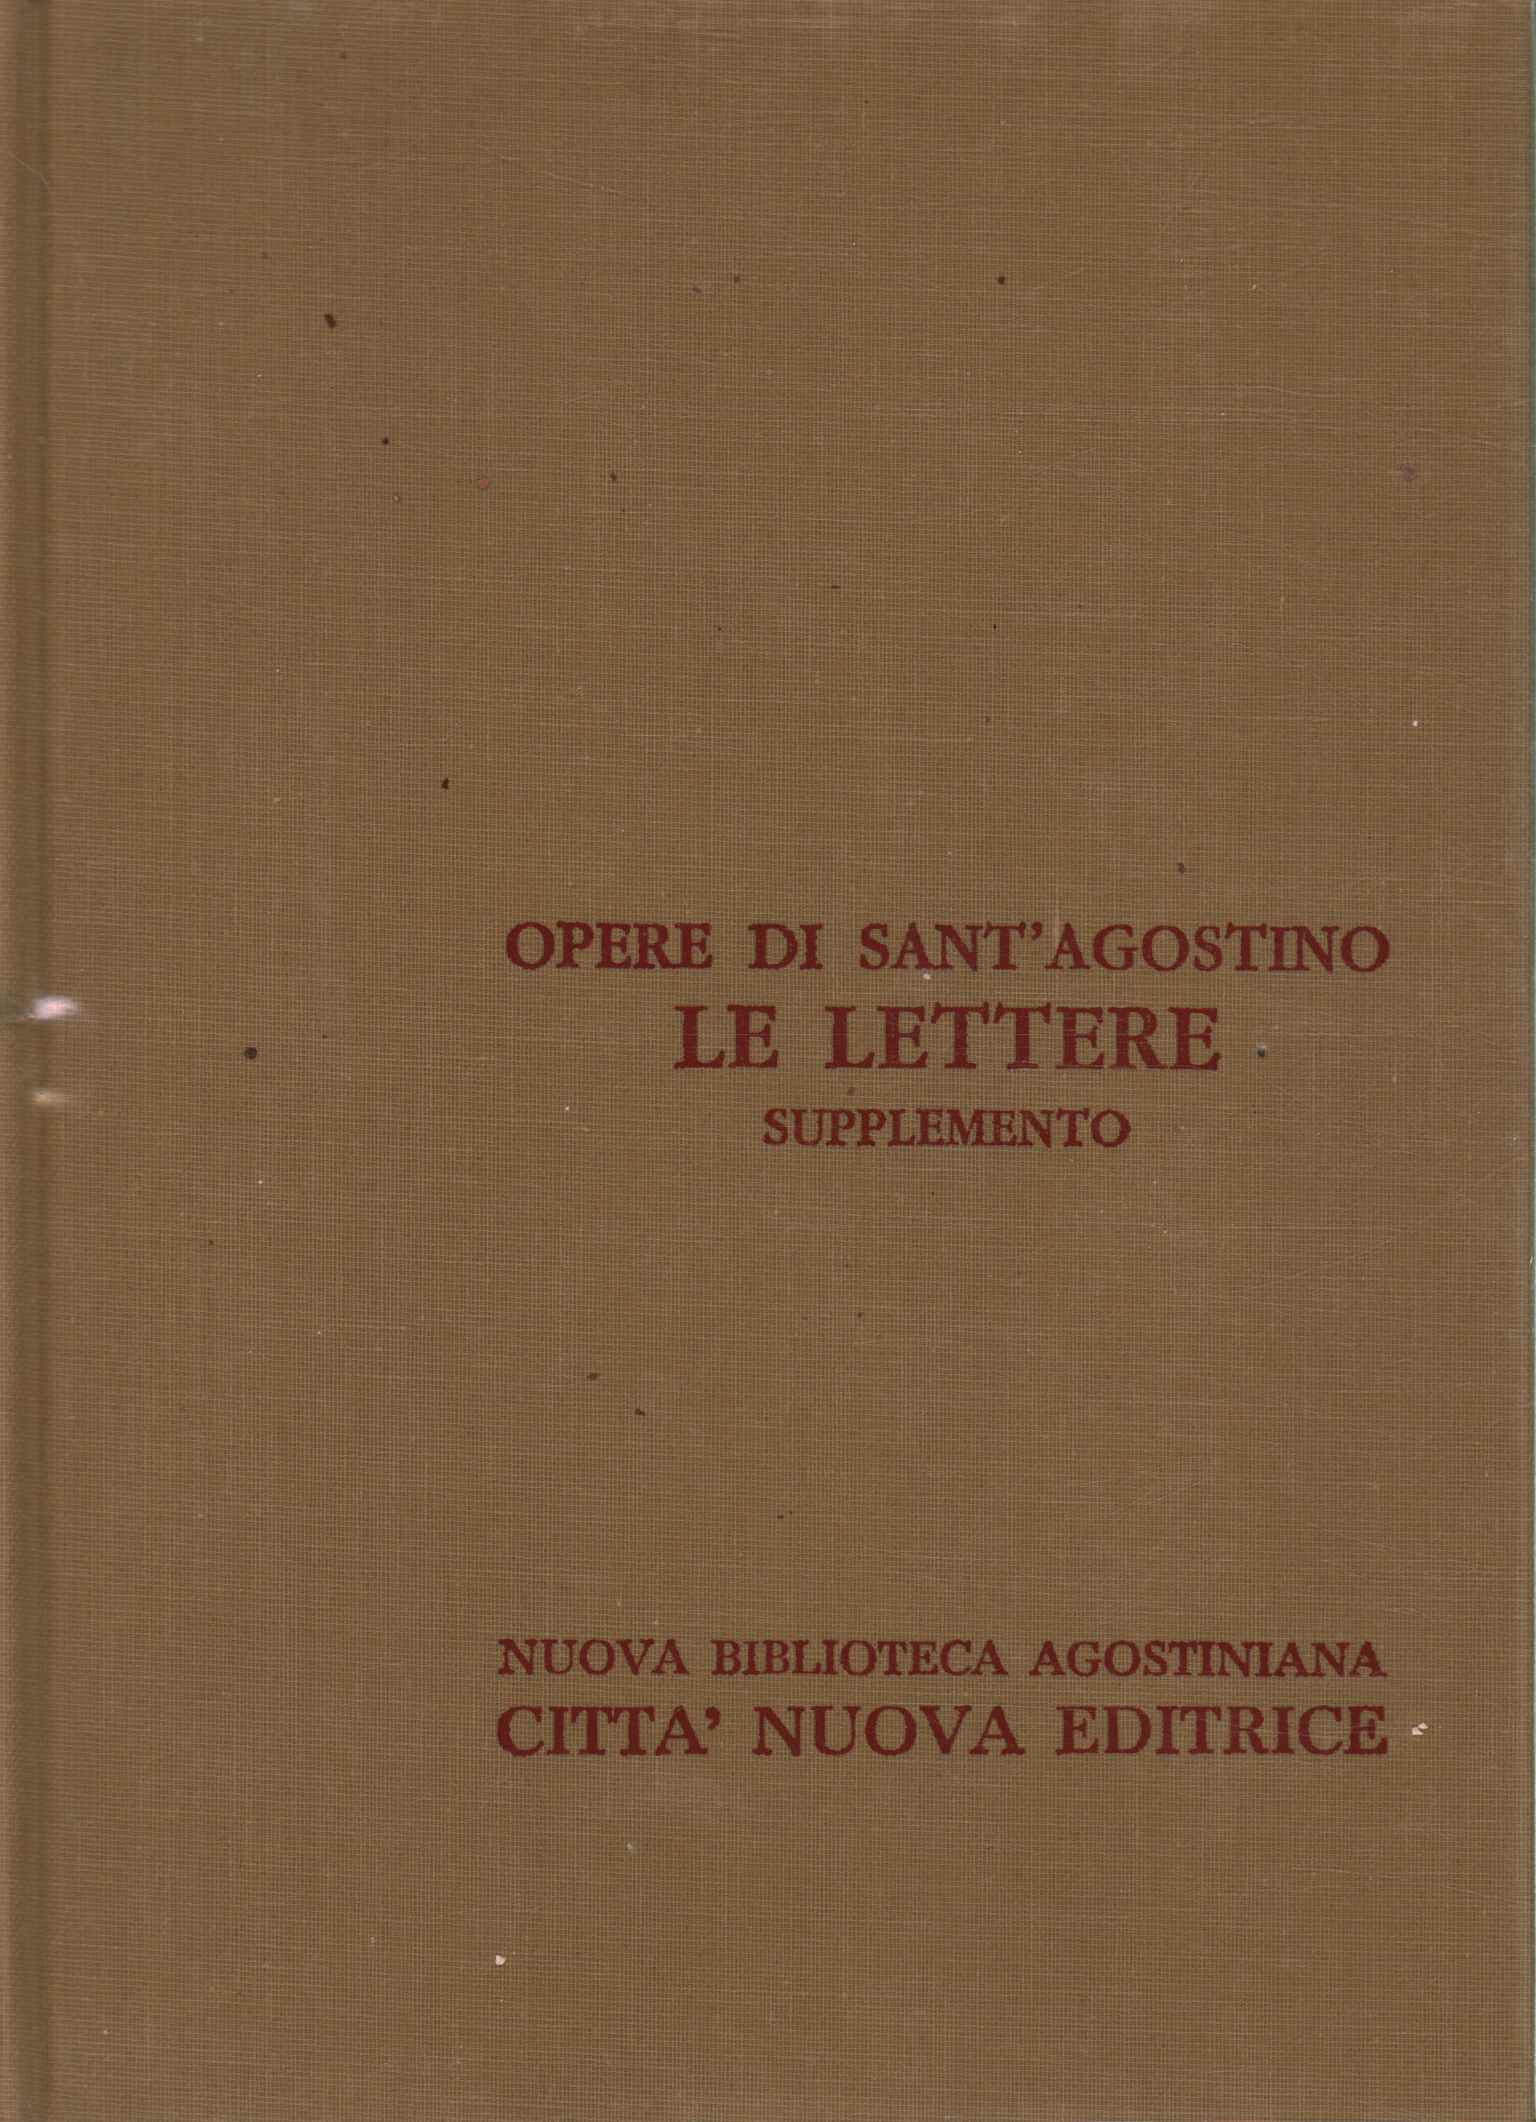 Werke von Sant'Agostino XXIII/A.%2,Werke von Sant'Agostino XXIII/A.%2